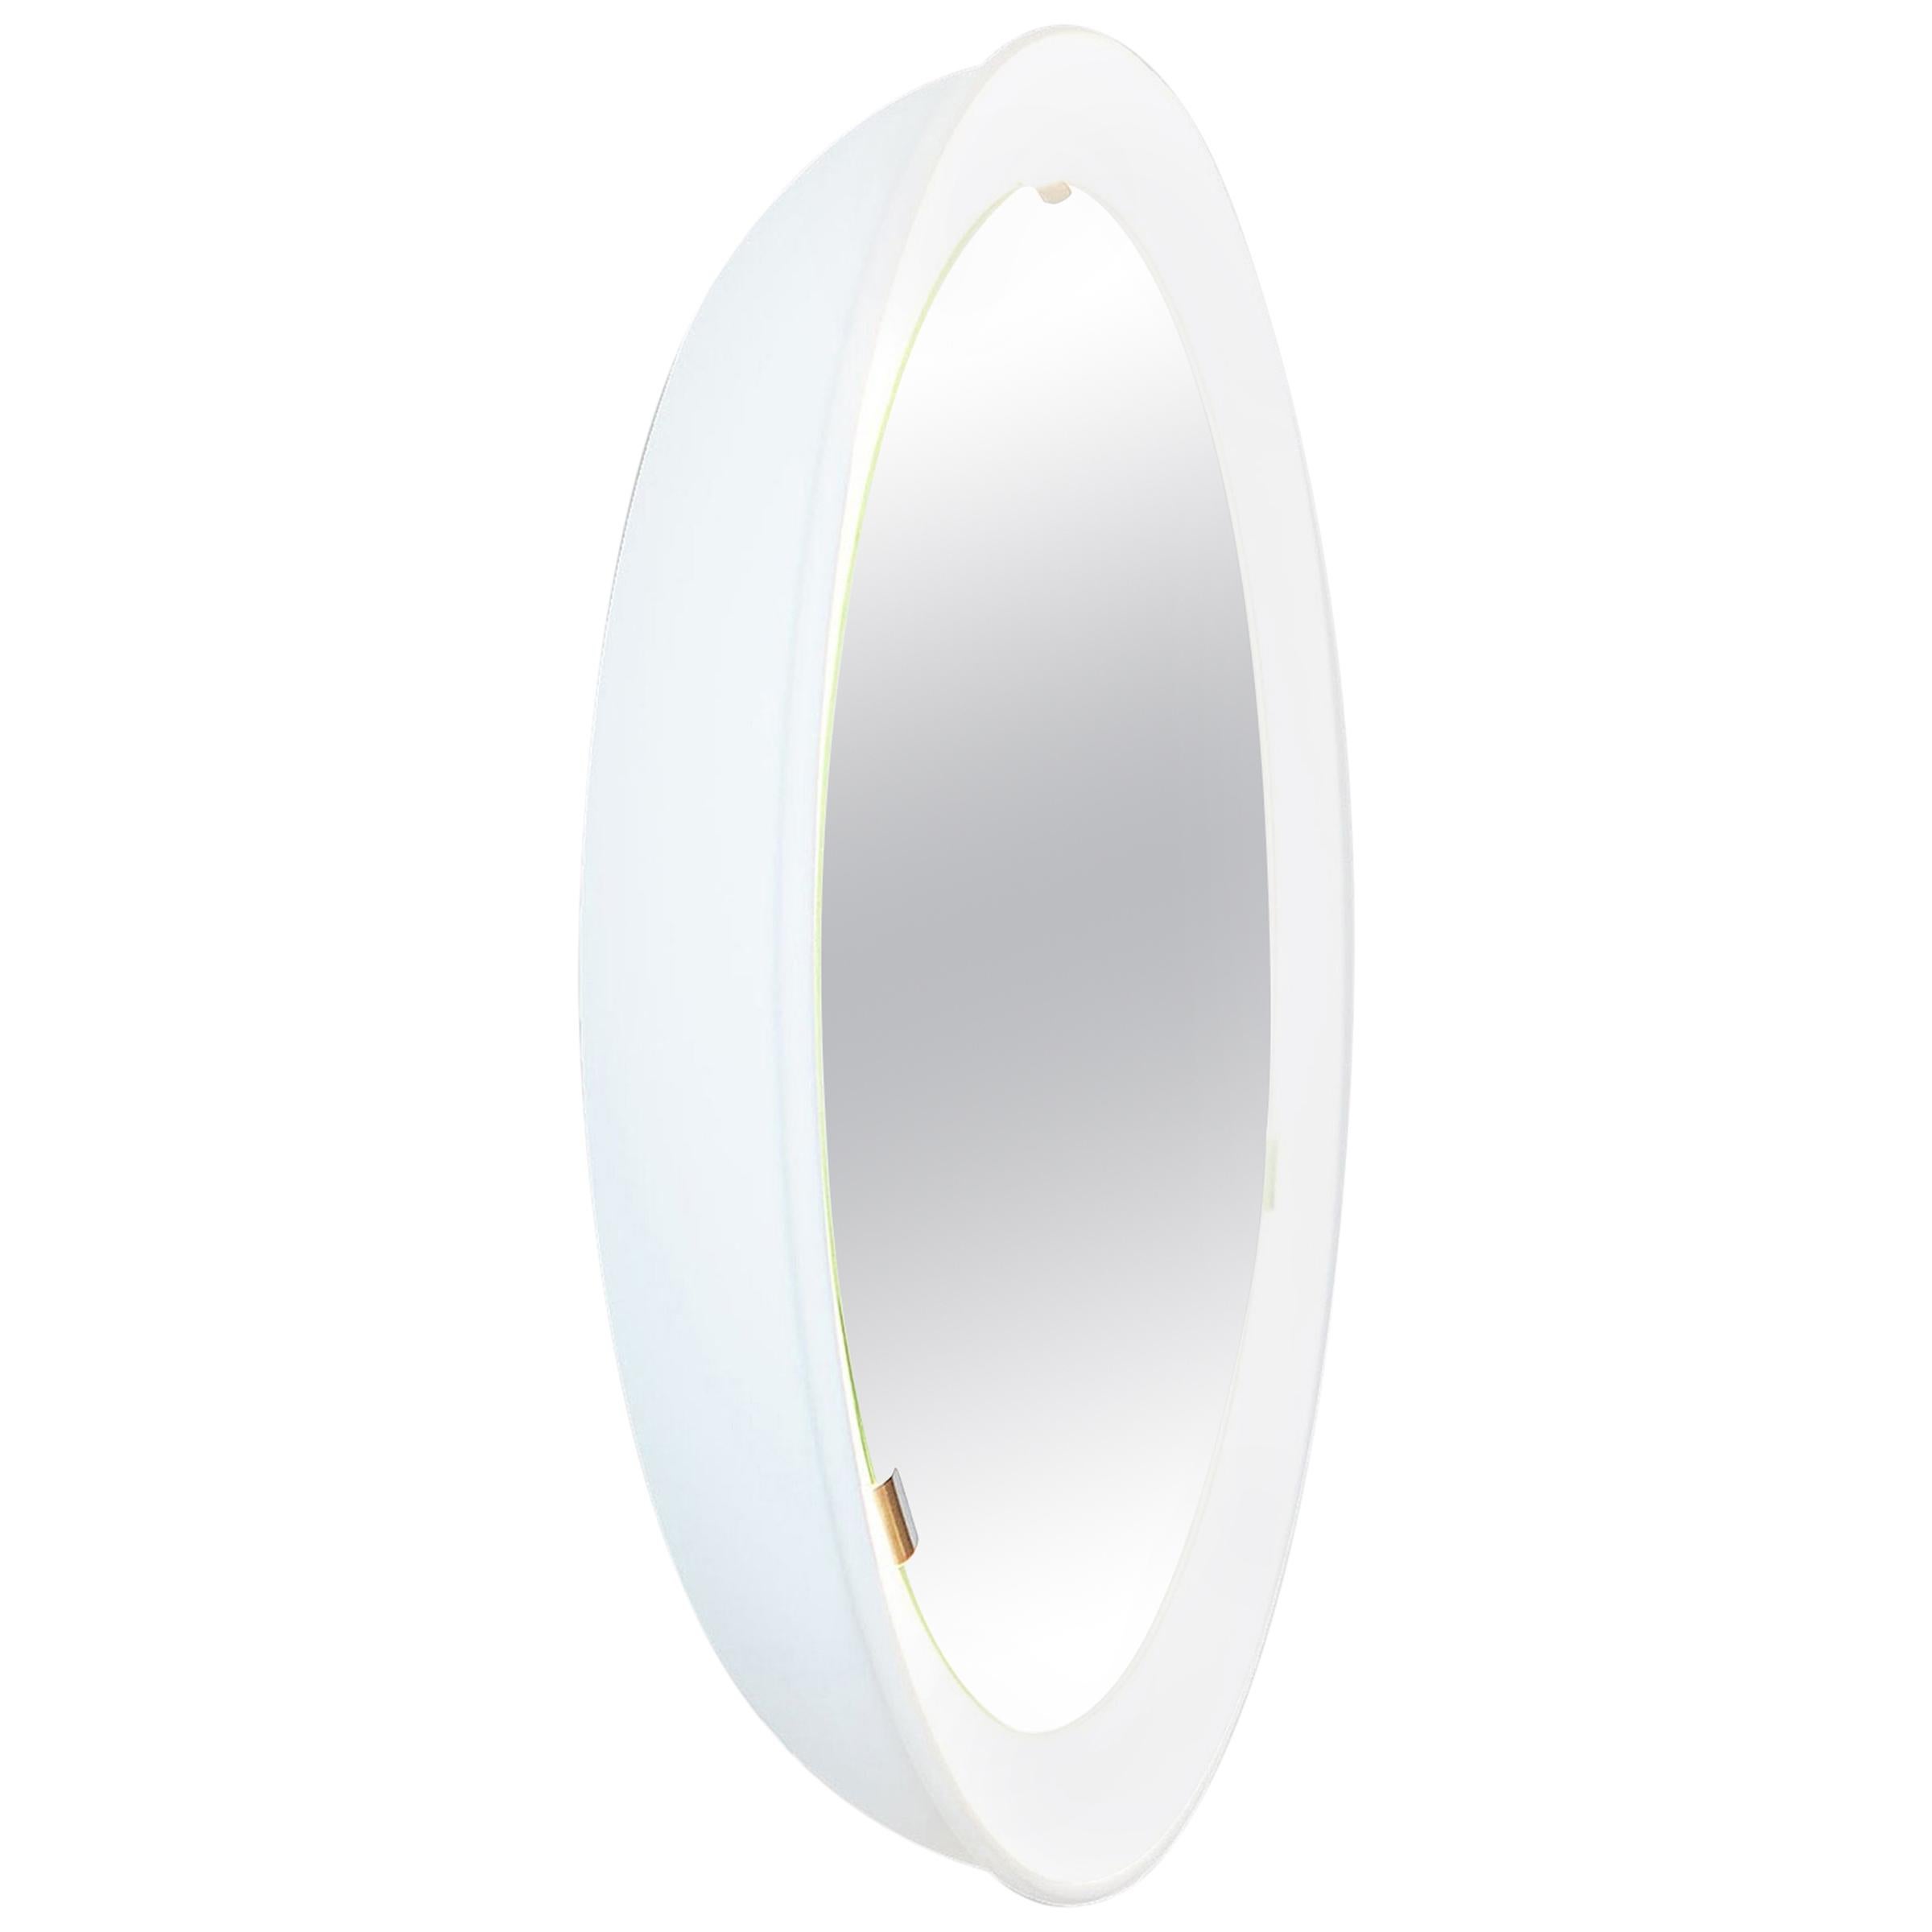 PH-Spiegel, weiß lackiert, satiniertes Passepartout, Durchmesser 360 mm, ausziehbare Schnur, ph